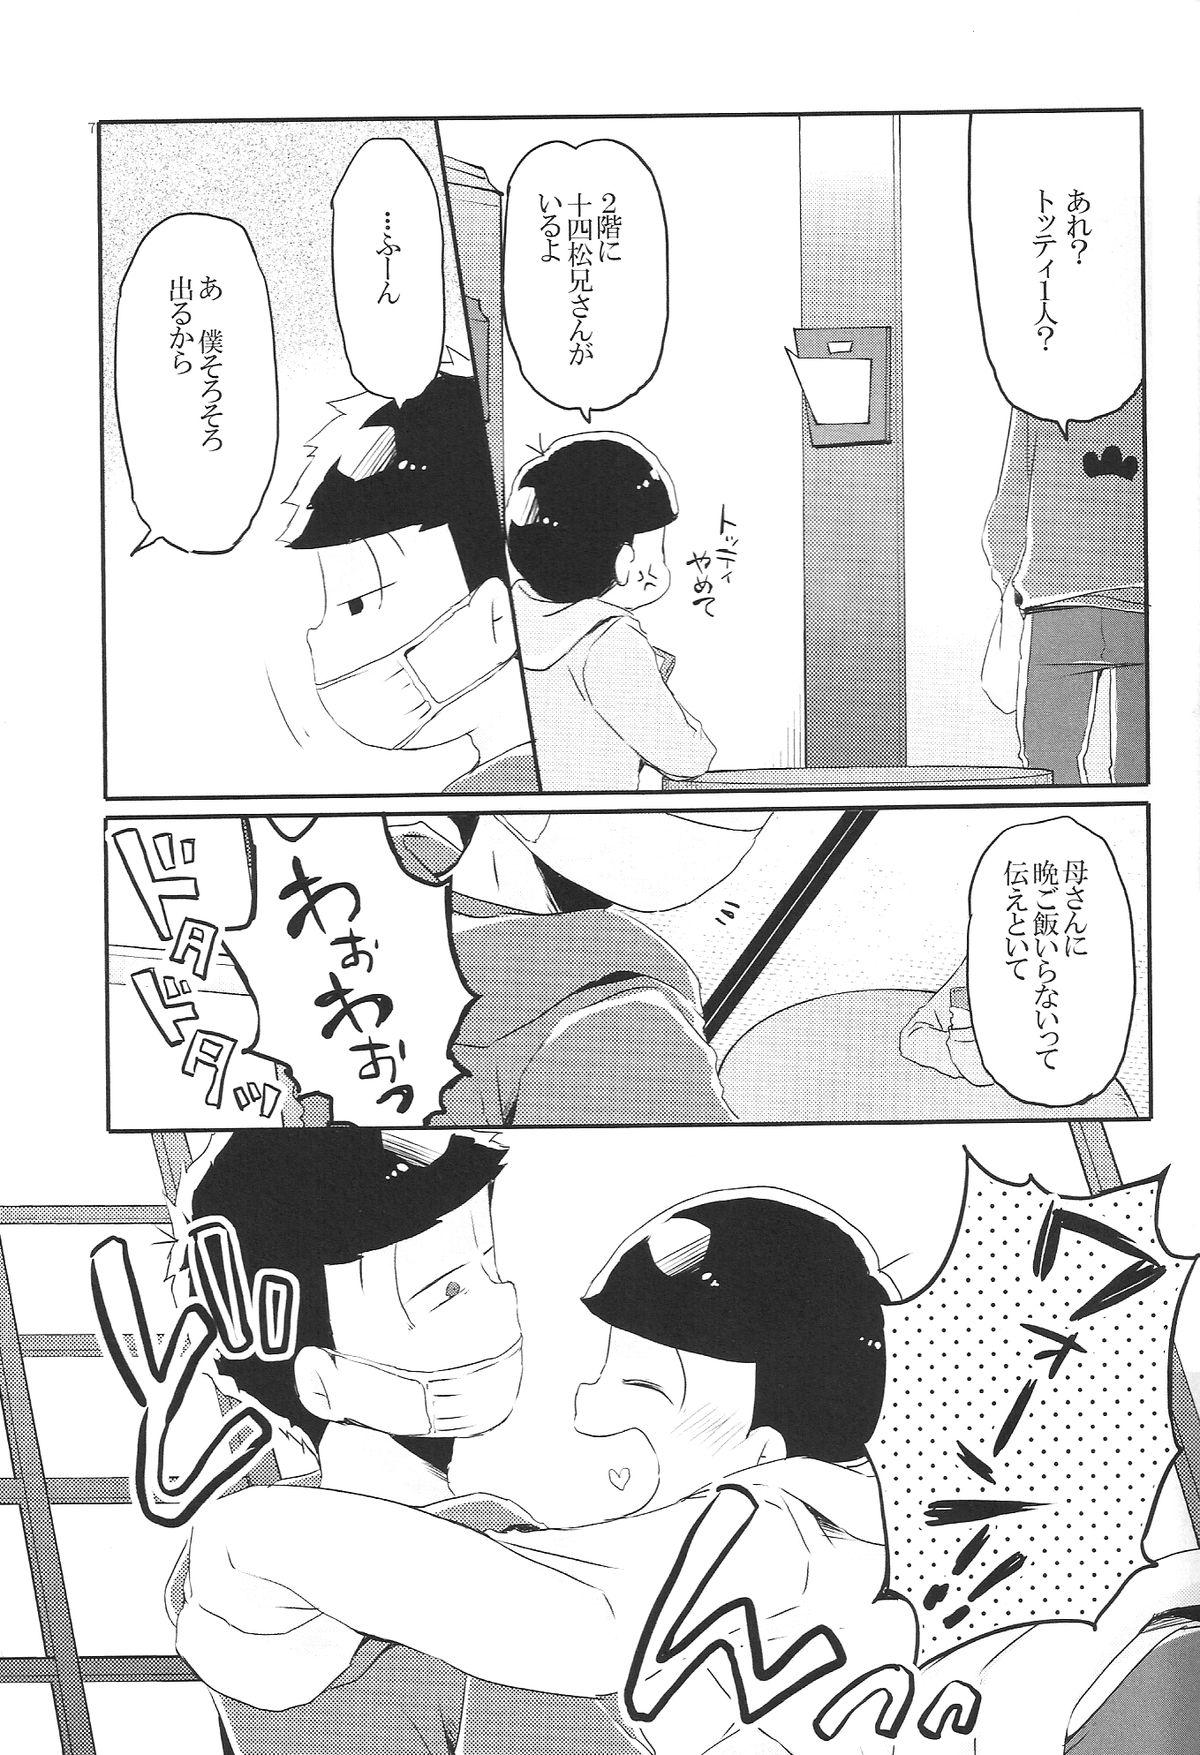 Teensnow Inu no Kimochi Neko no Kimochi Boku no Kimochi - Osomatsu-san Amatuer - Page 6